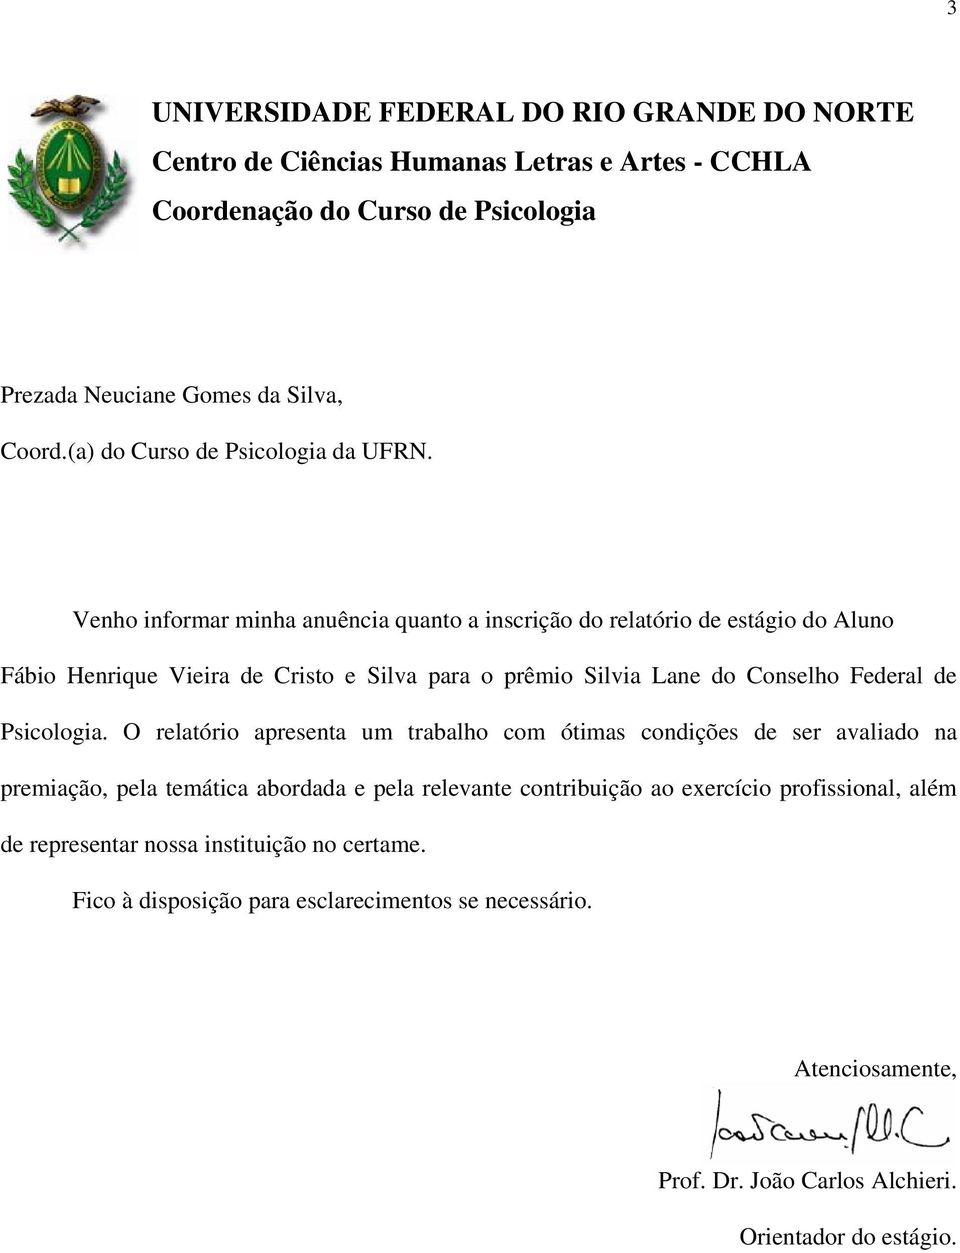 Venho informar minha anuência quanto a inscrição do relatório de estágio do Aluno Fábio Henrique Vieira de Cristo e Silva para o prêmio Silvia Lane do Conselho Federal de Psicologia.